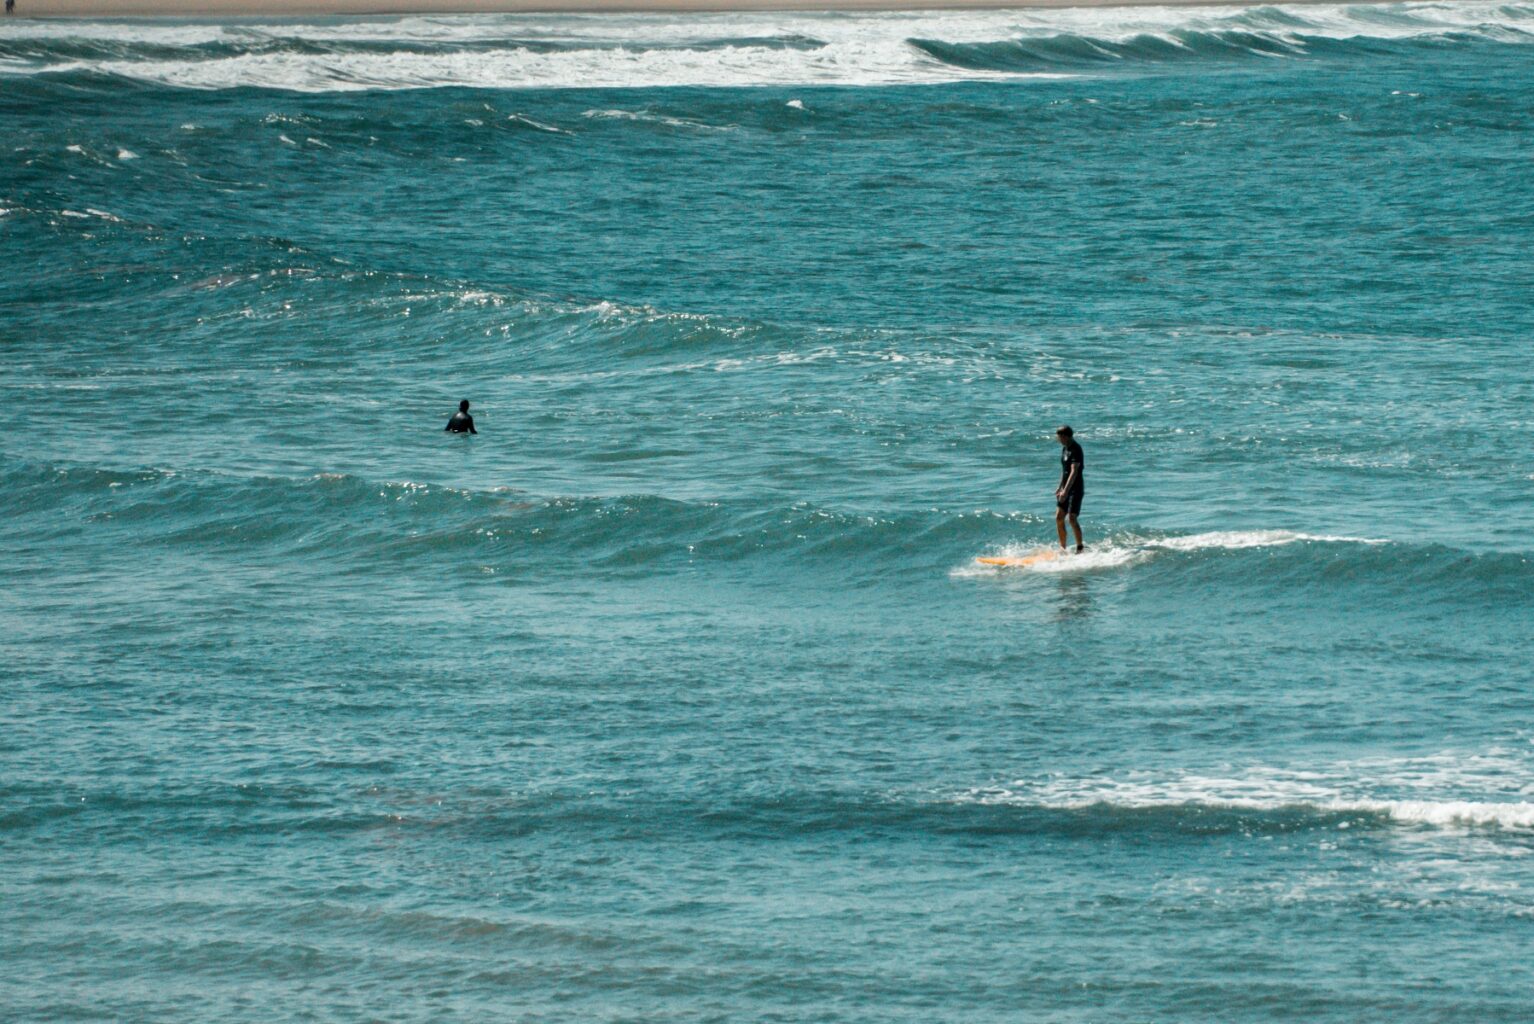 Surfer catching a wave at Arrawarra Beach